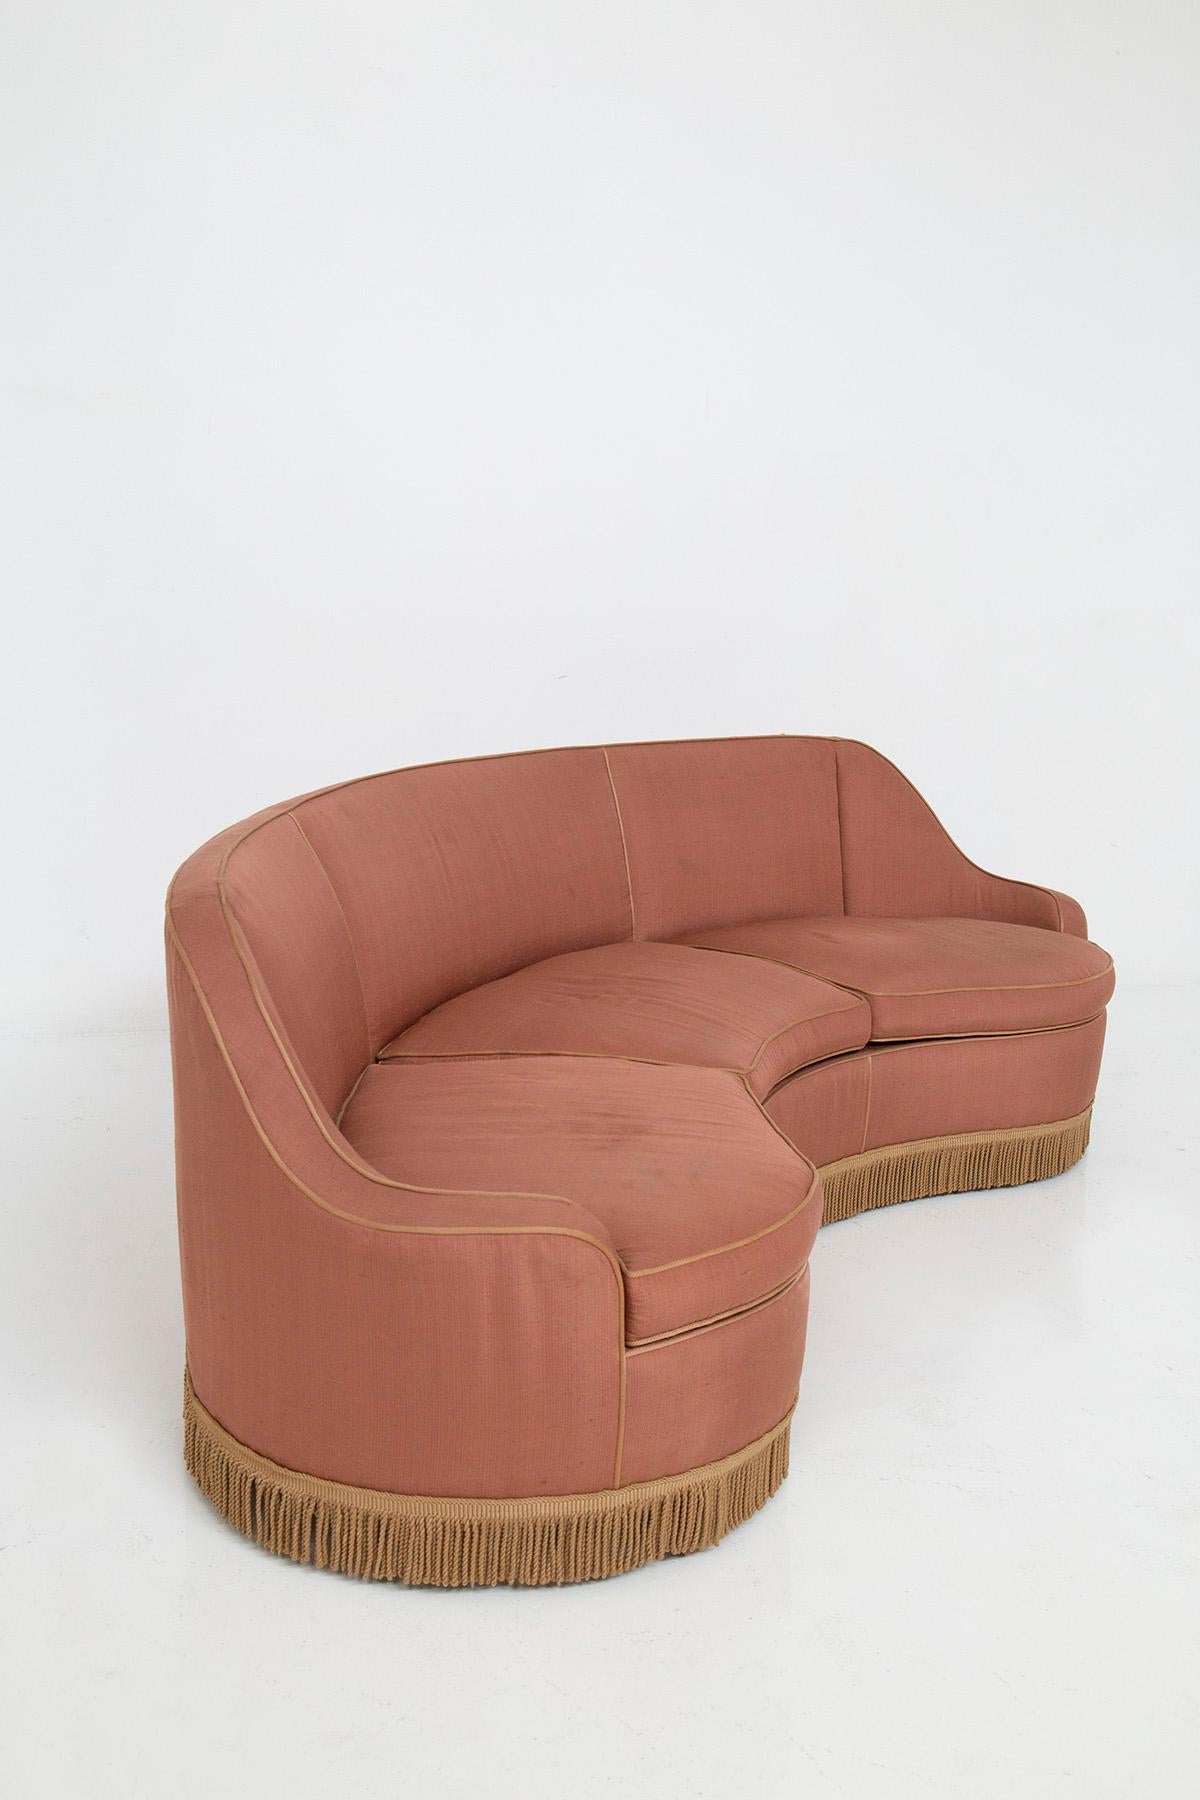 Italian three-seater sofa in pink fabric attributed to Gio Ponti 4